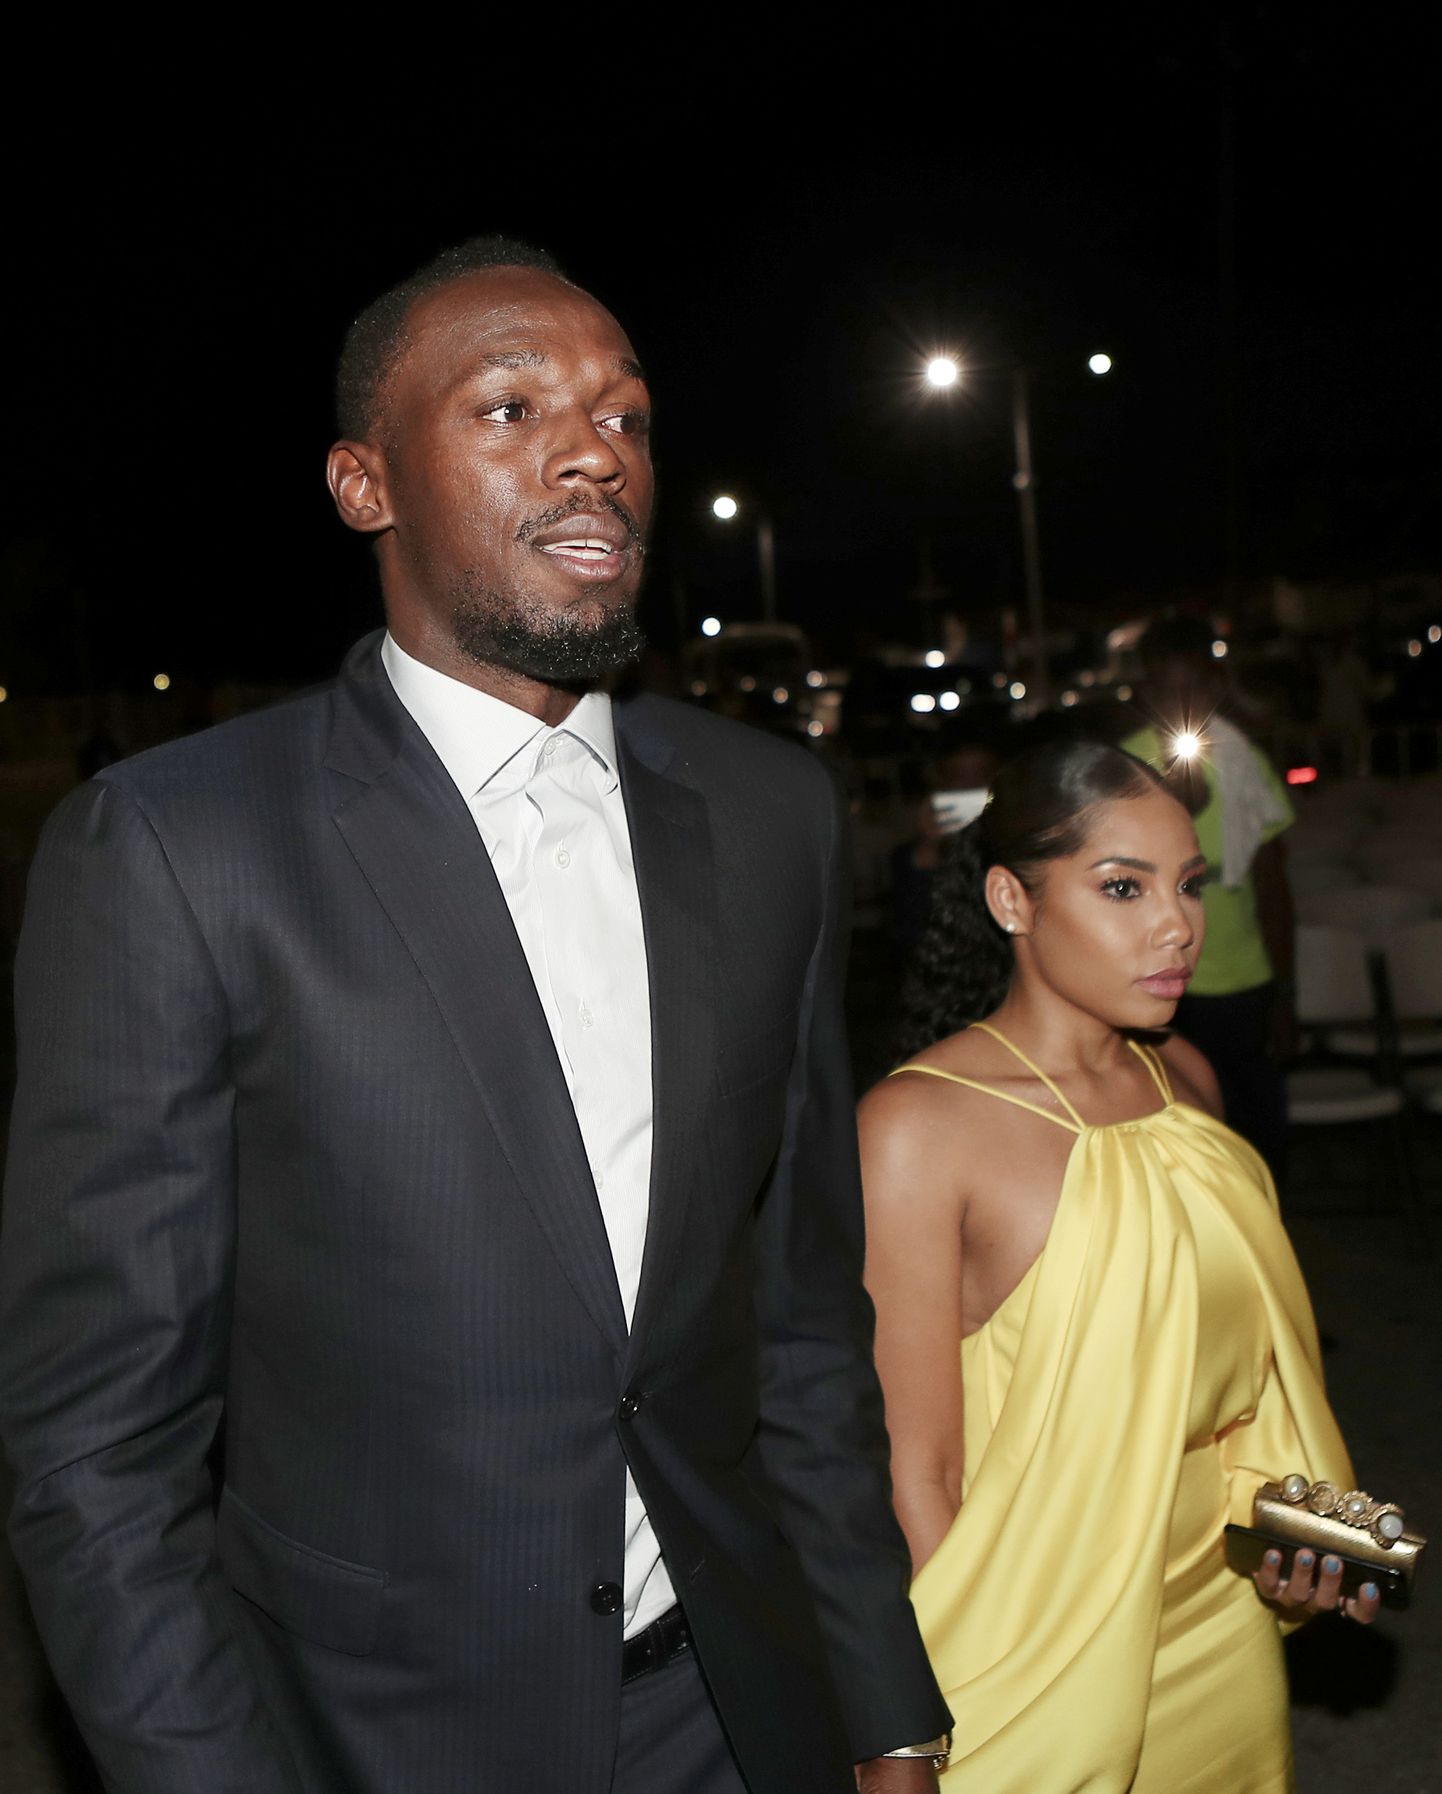 Olümpiavõitja Usain Bolt teatas, et tema tüdruksõber Kasi Bennett on lapseootel.